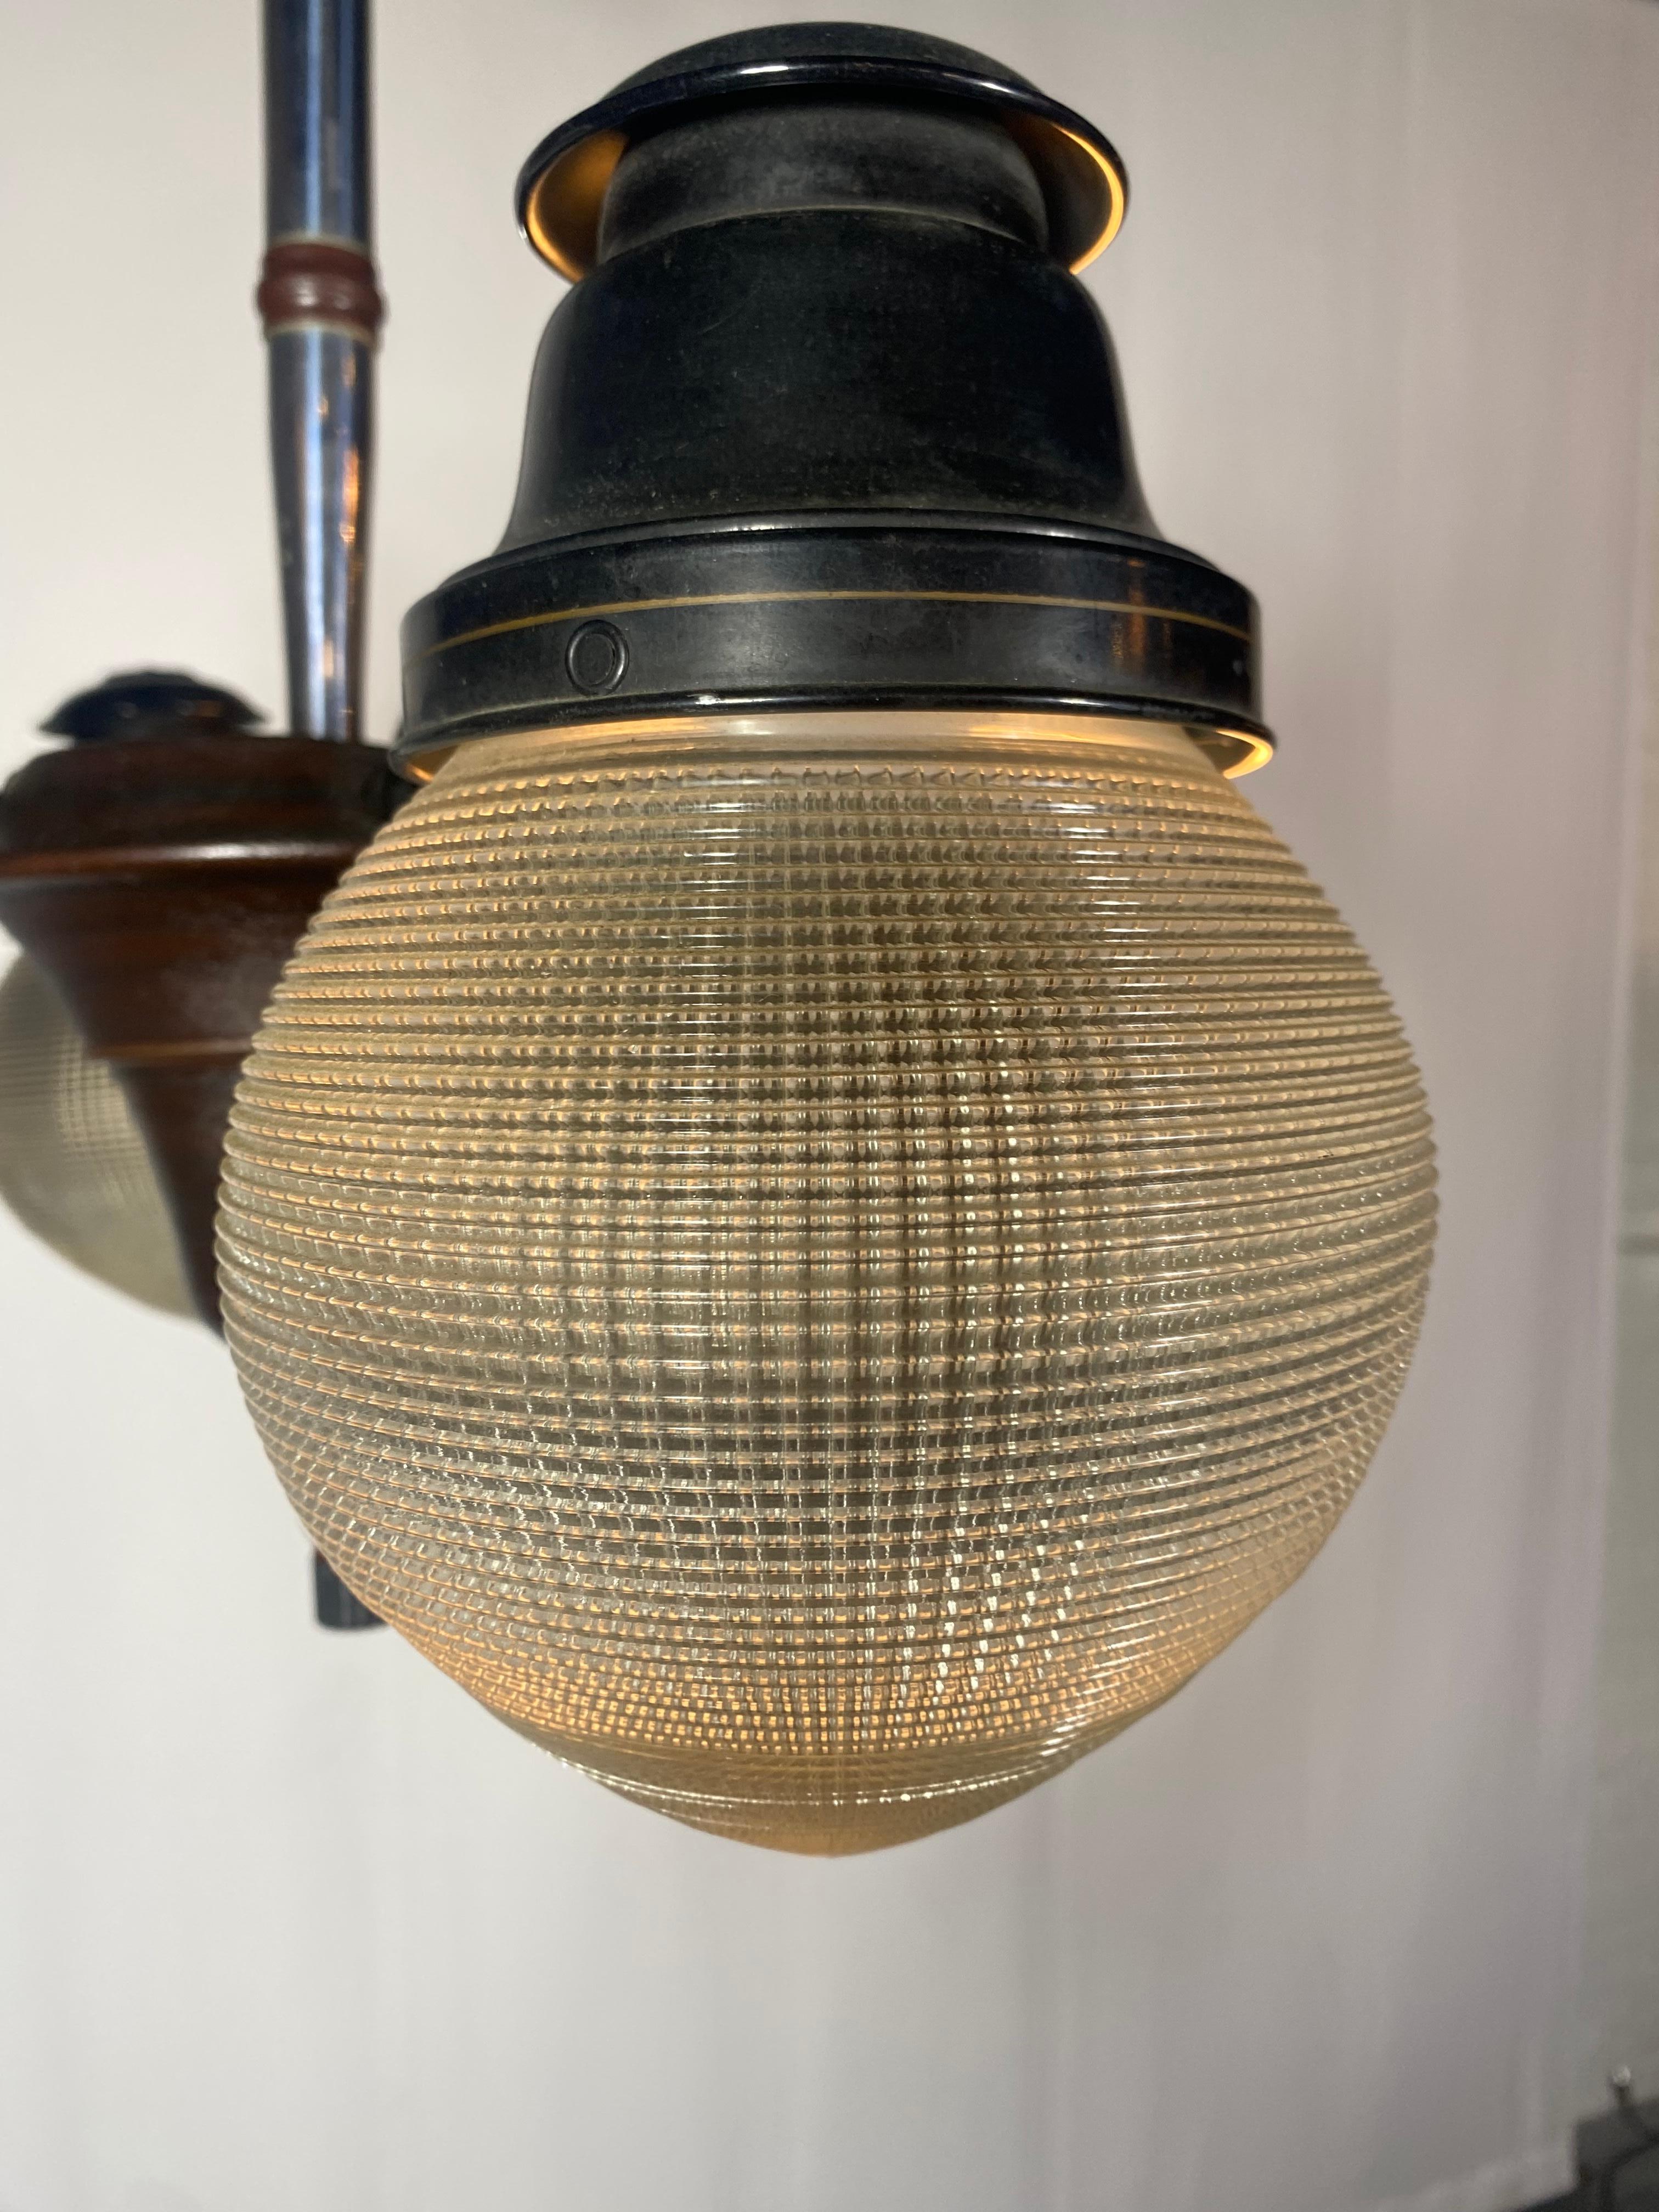 Bel exemple d'une lampe Ritter Dental de 1920. Cette lampe est dotée d'un interrupteur à 4 voies unique qui permet d'allumer les ampoules une à une pour obtenir la quantité de lumière voulue. Conserve 4 teintes d'Holophane d'origine. Patine d'usage